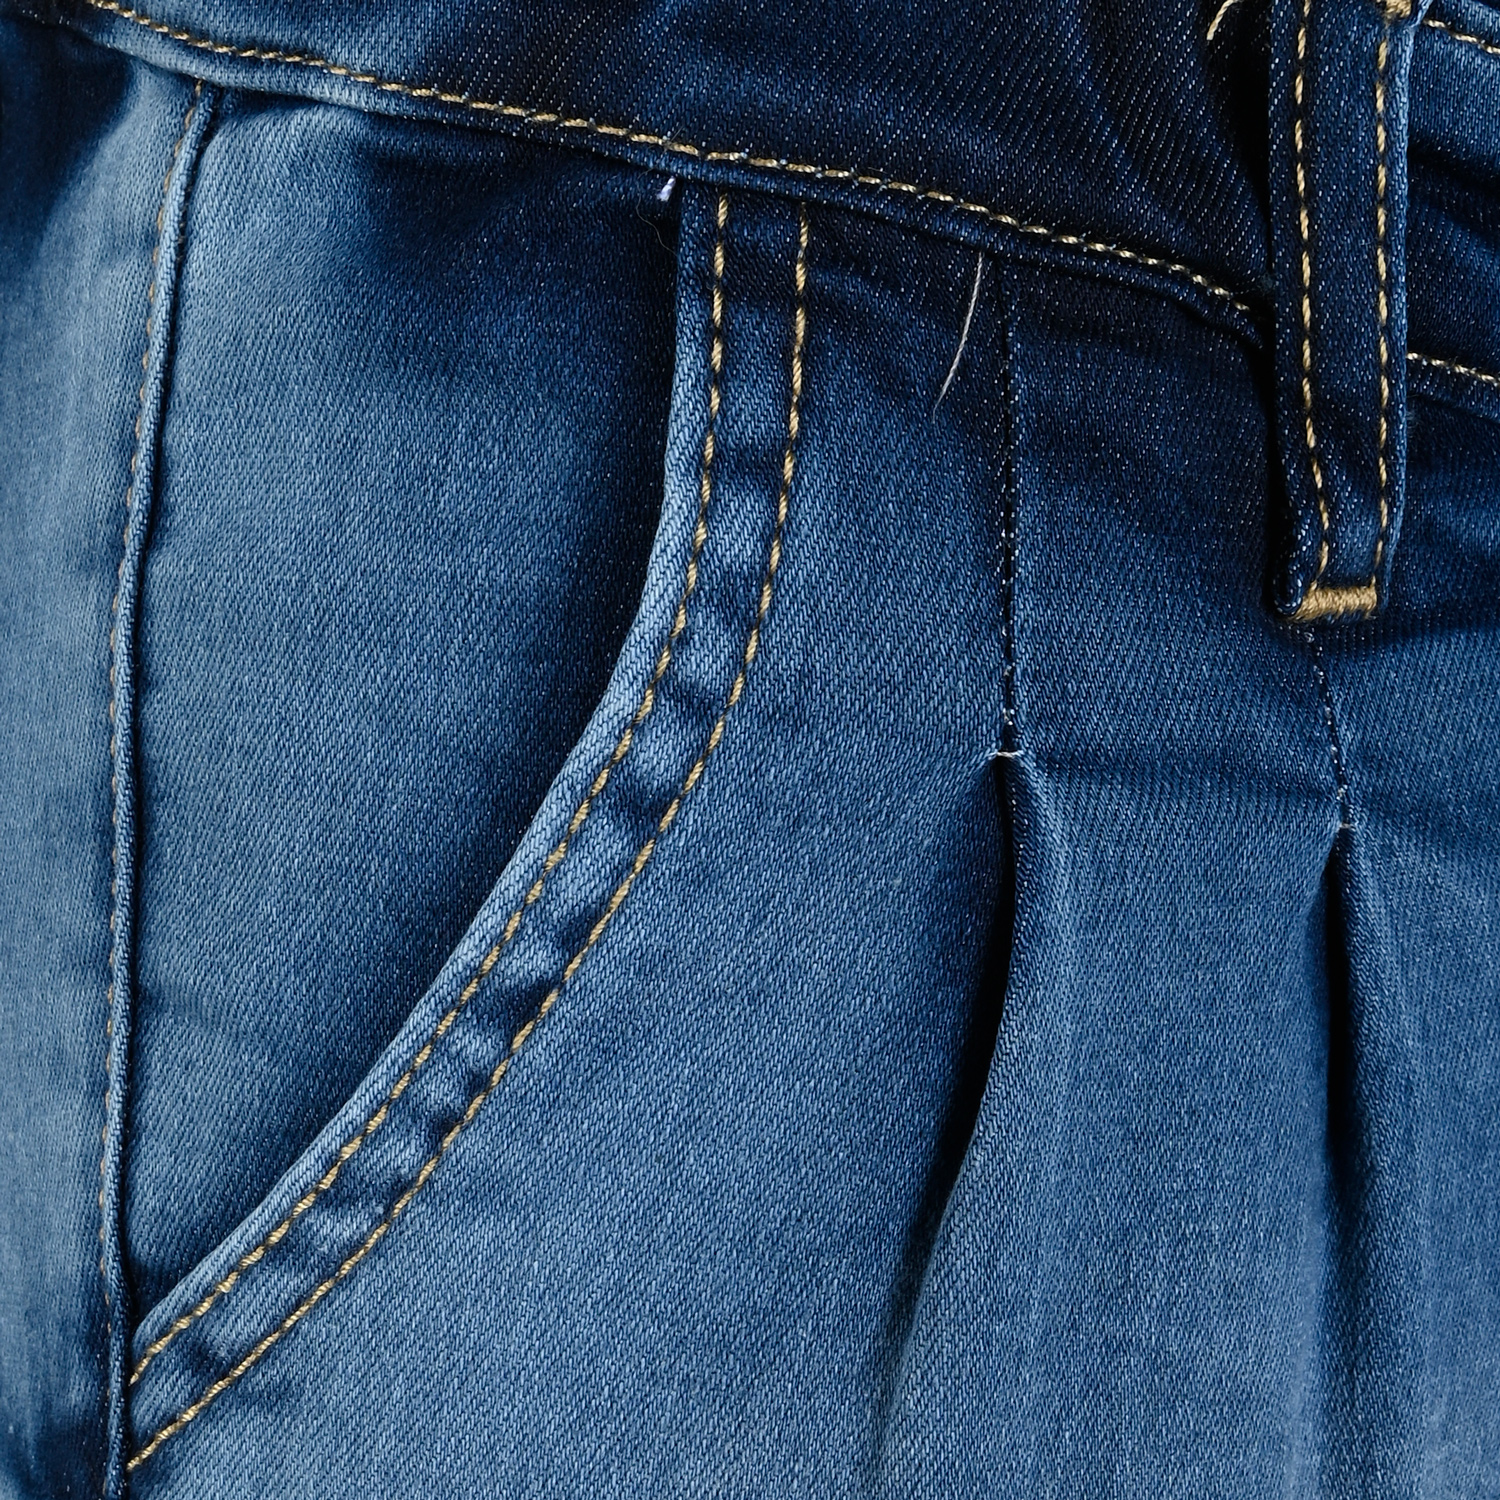 1318-Girls High-Waist Jeans Paperbag, verfügbar in Normal